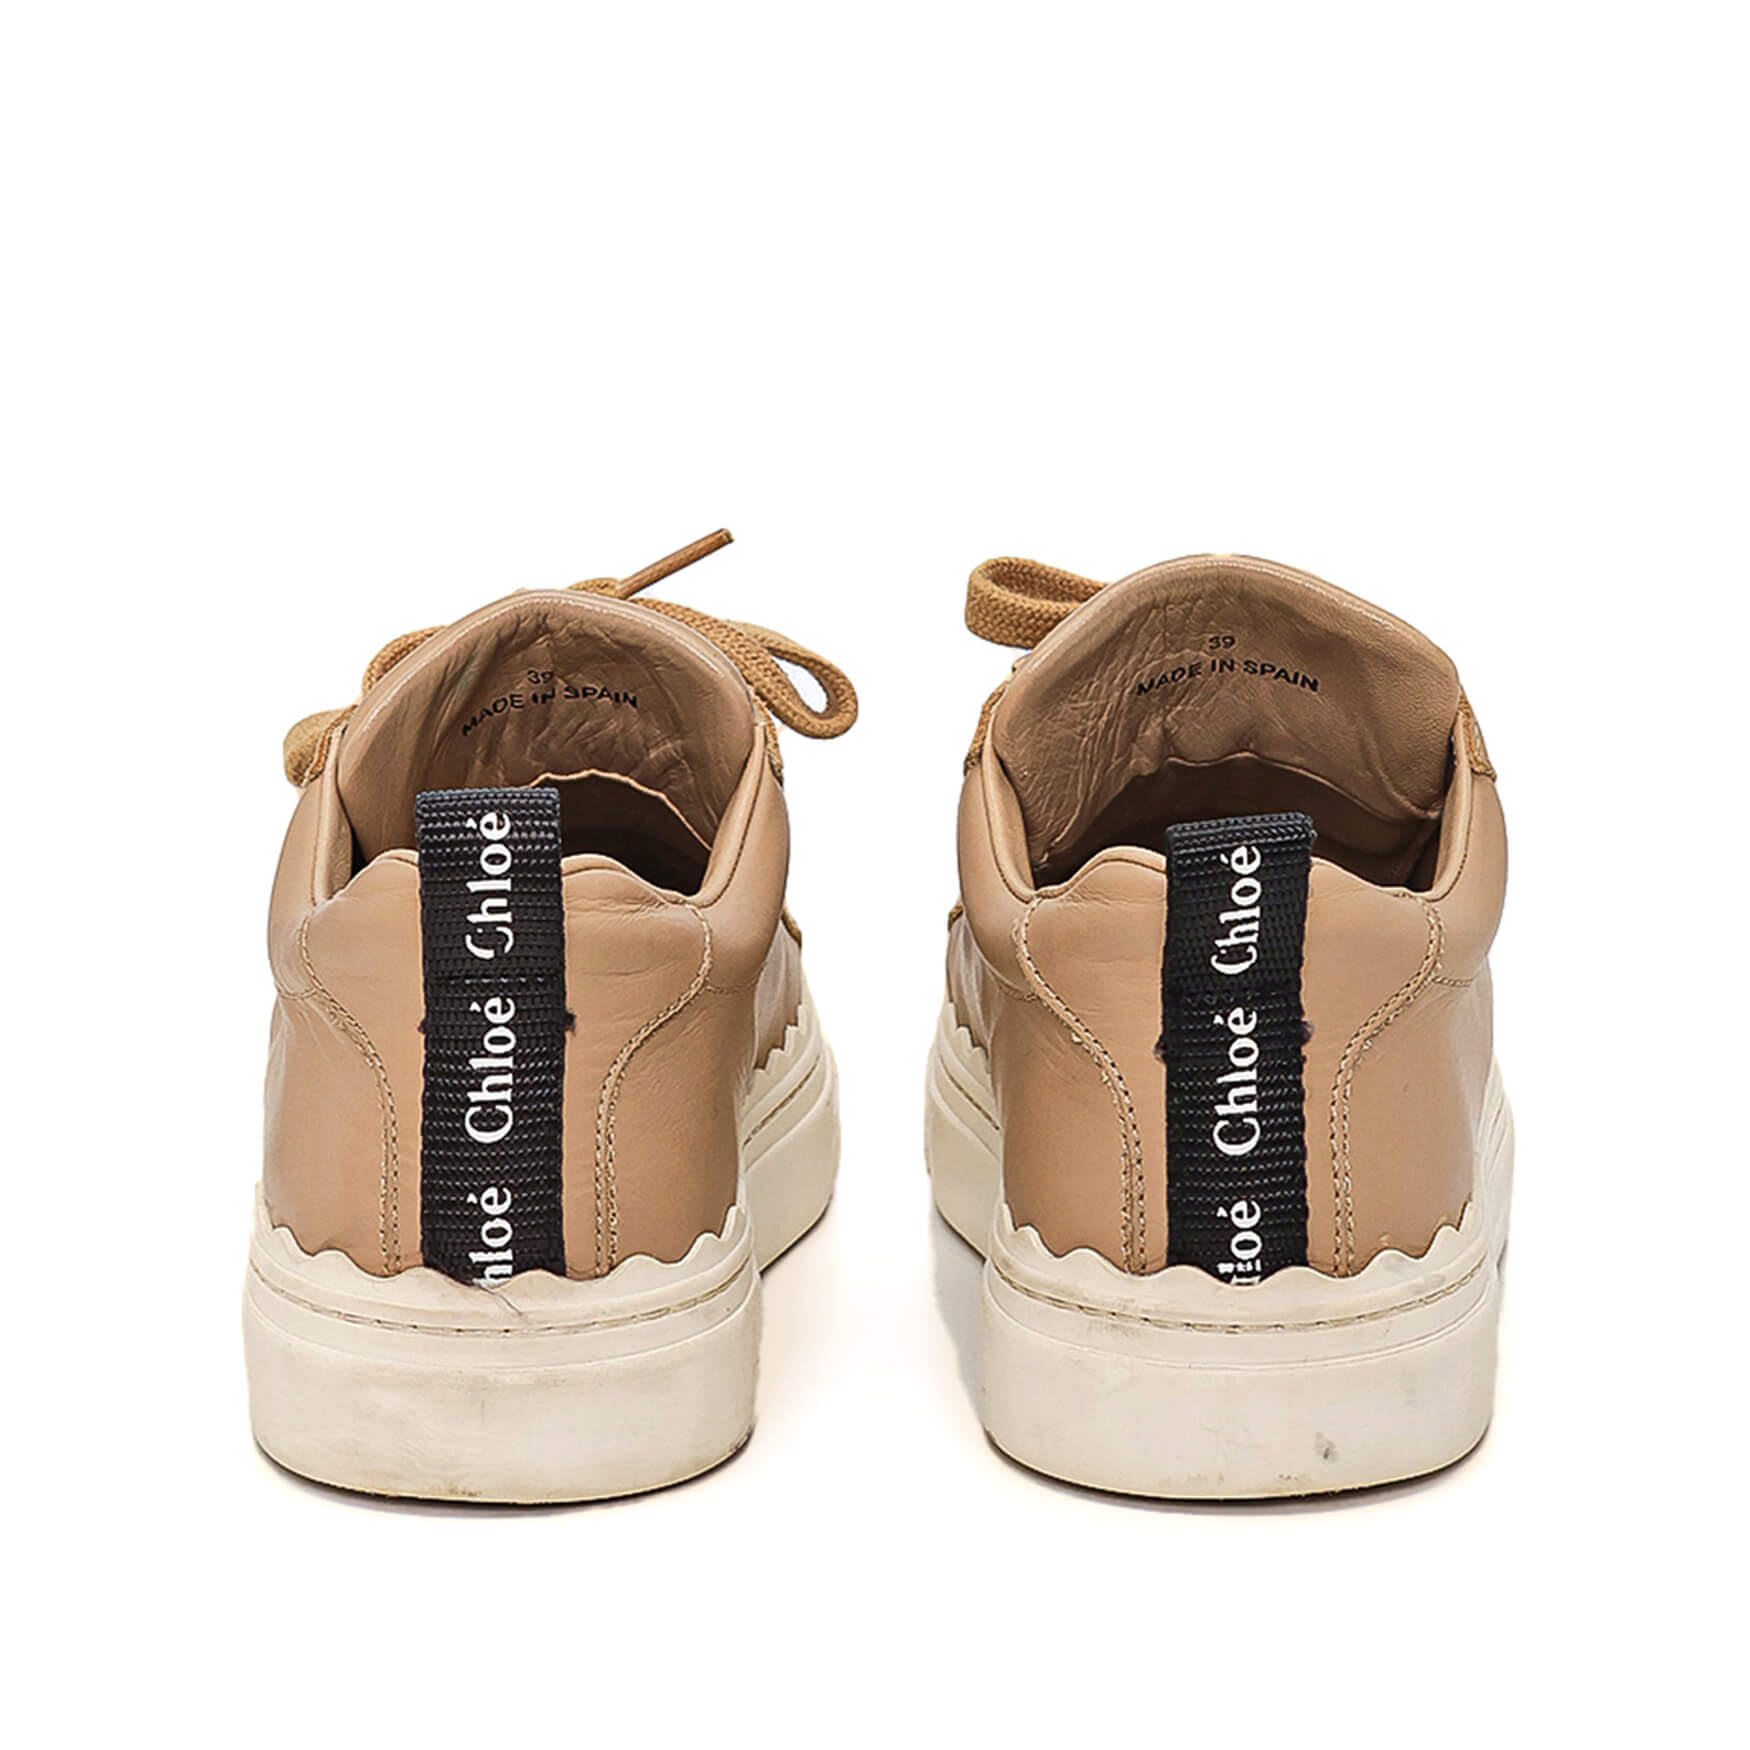 Chloe - Beige Leather Sneakers